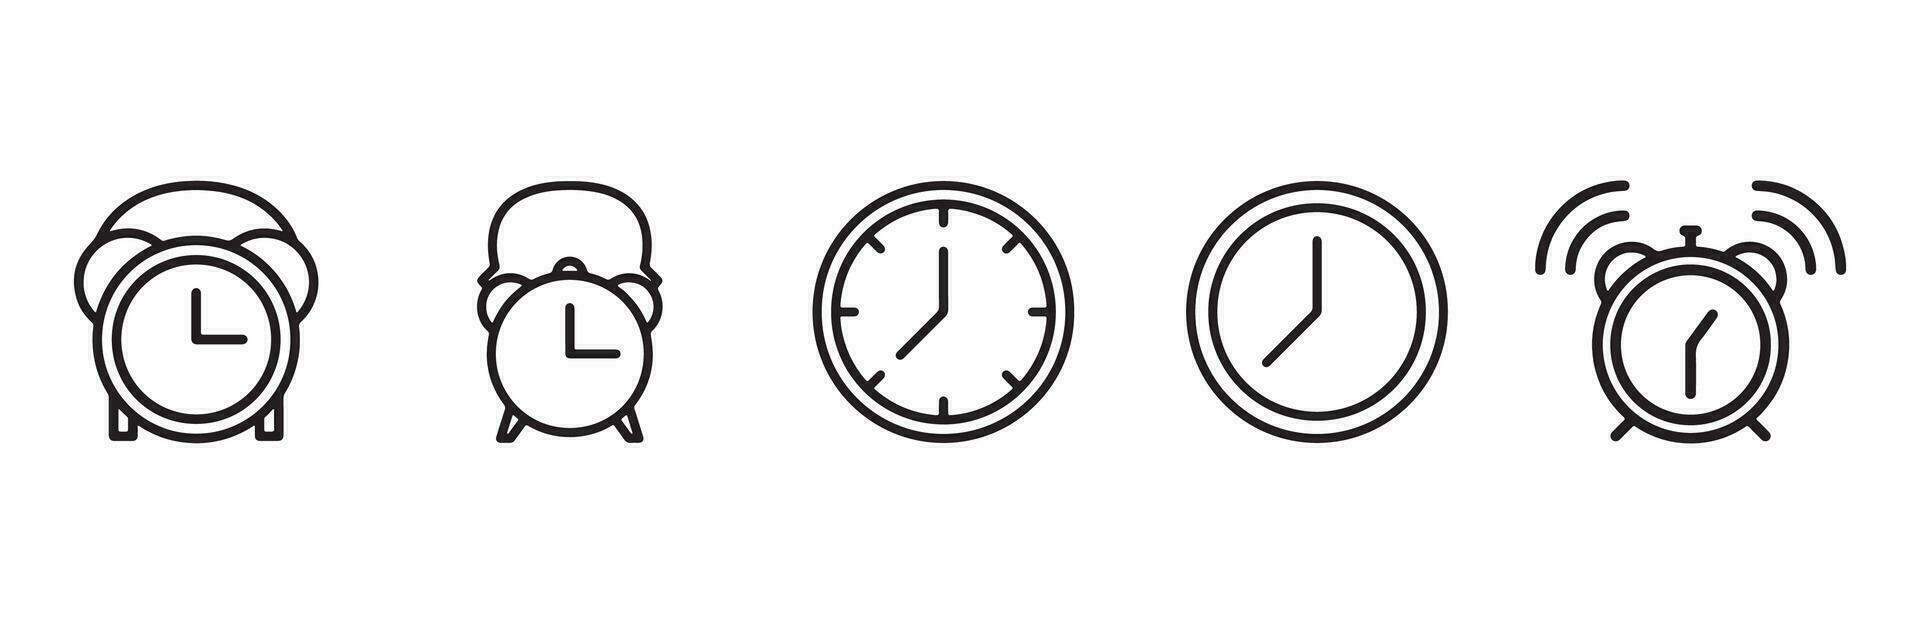 hora y reloj icono colocar. hora, reloj y fecha lineal iconos hora administración y Temporizador negro contorno vector señales y símbolos recopilación.